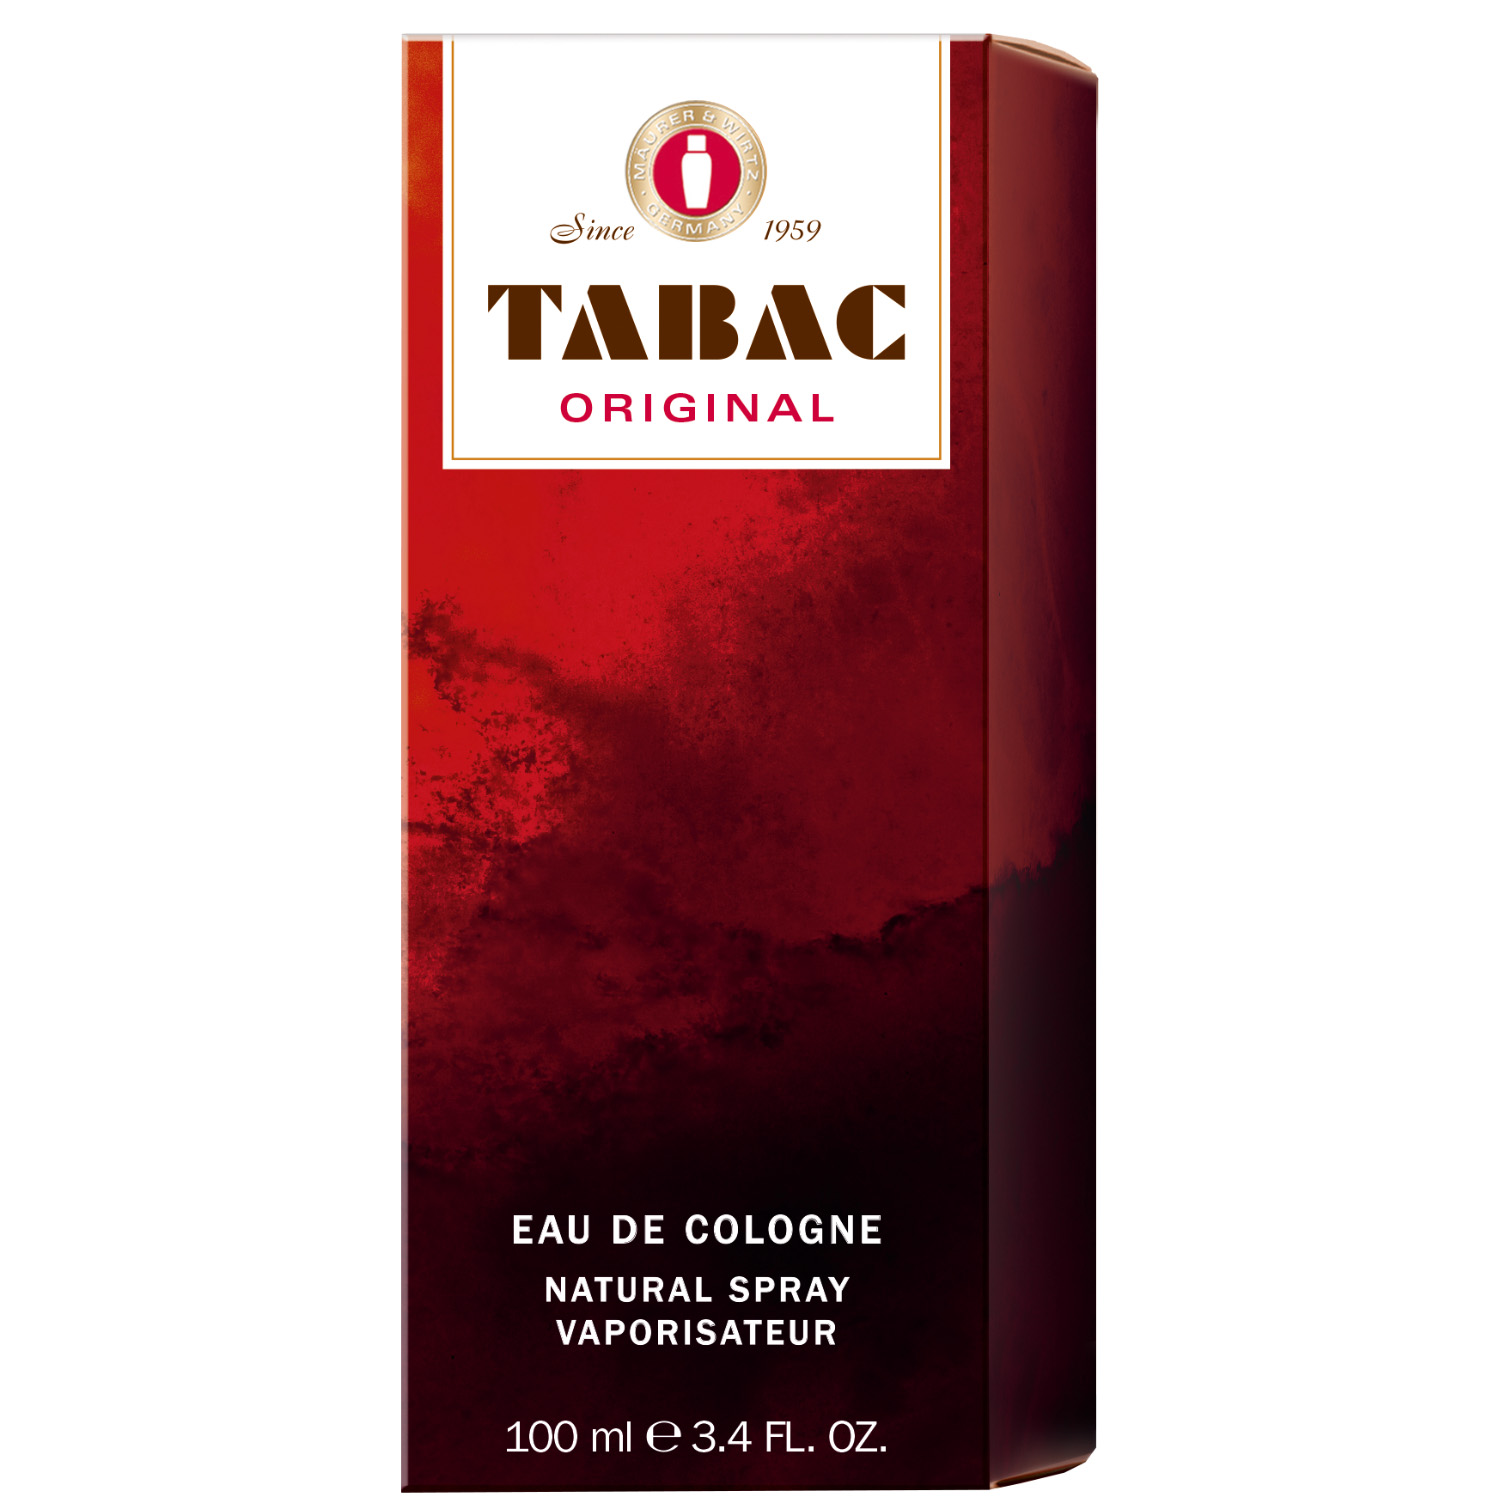 Tabac Original Eau de Cologne Natural Spray 100ml